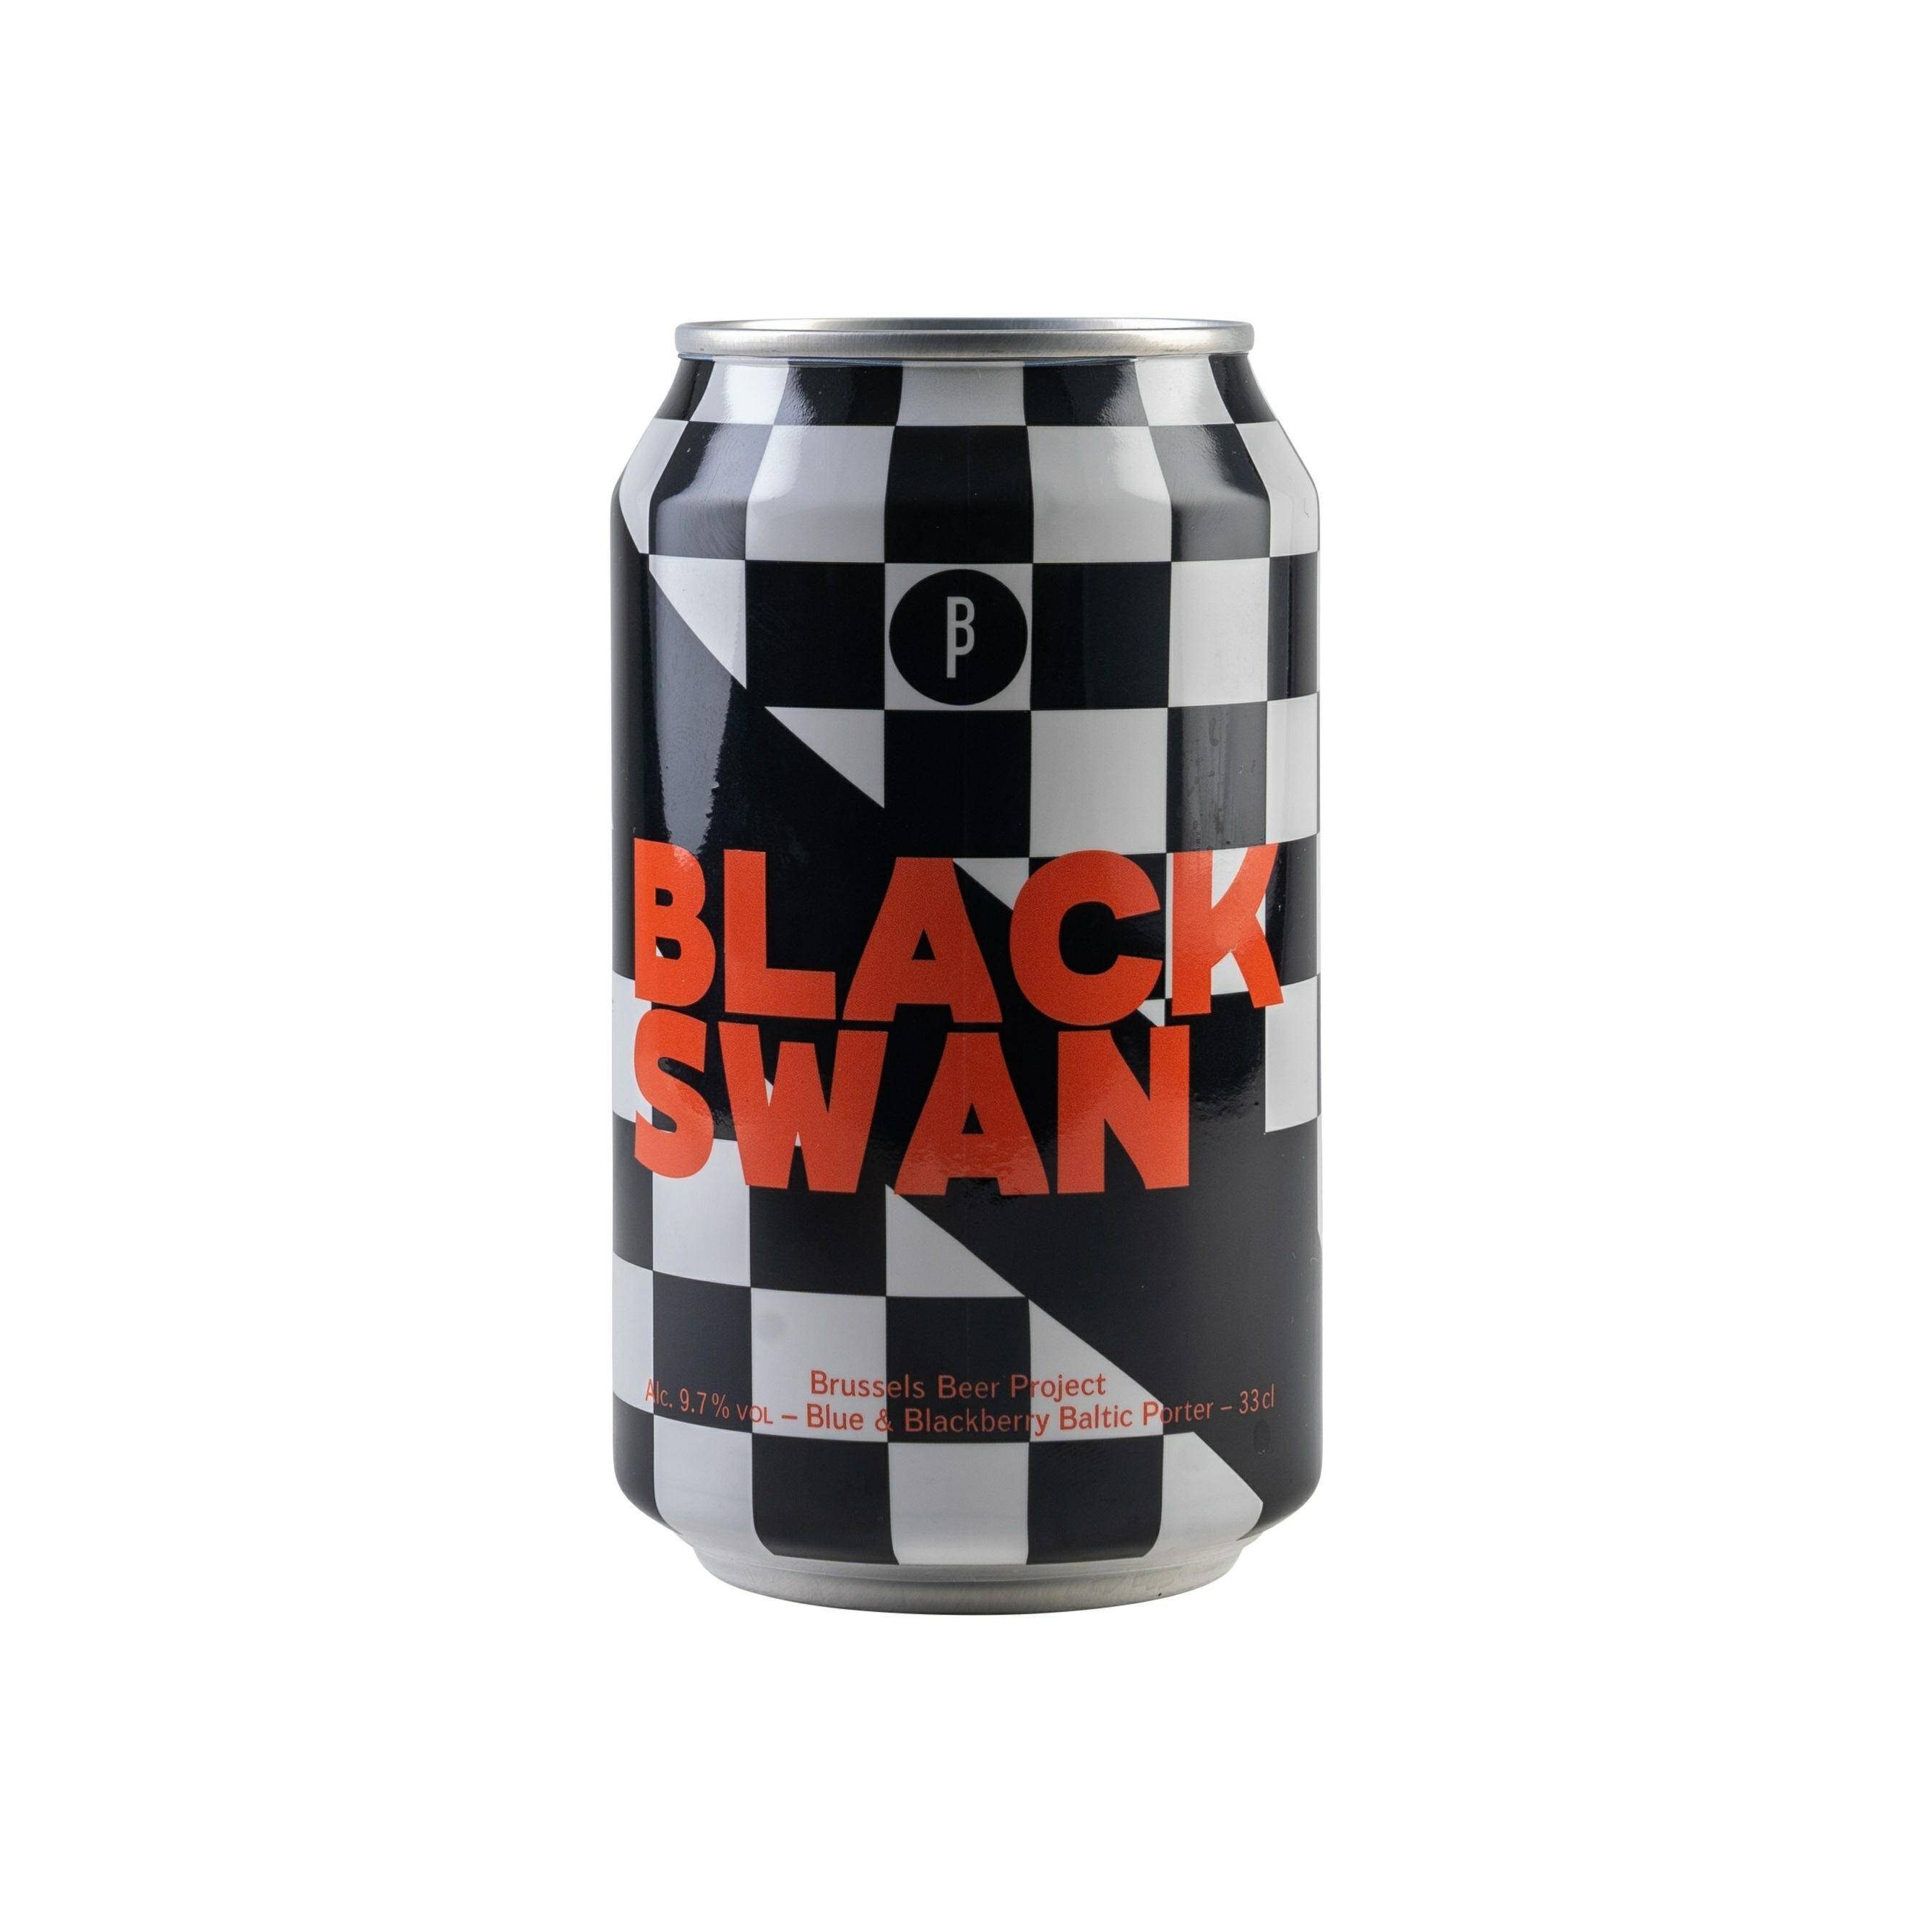 Brussels Beer Project Black Swan 330 ml